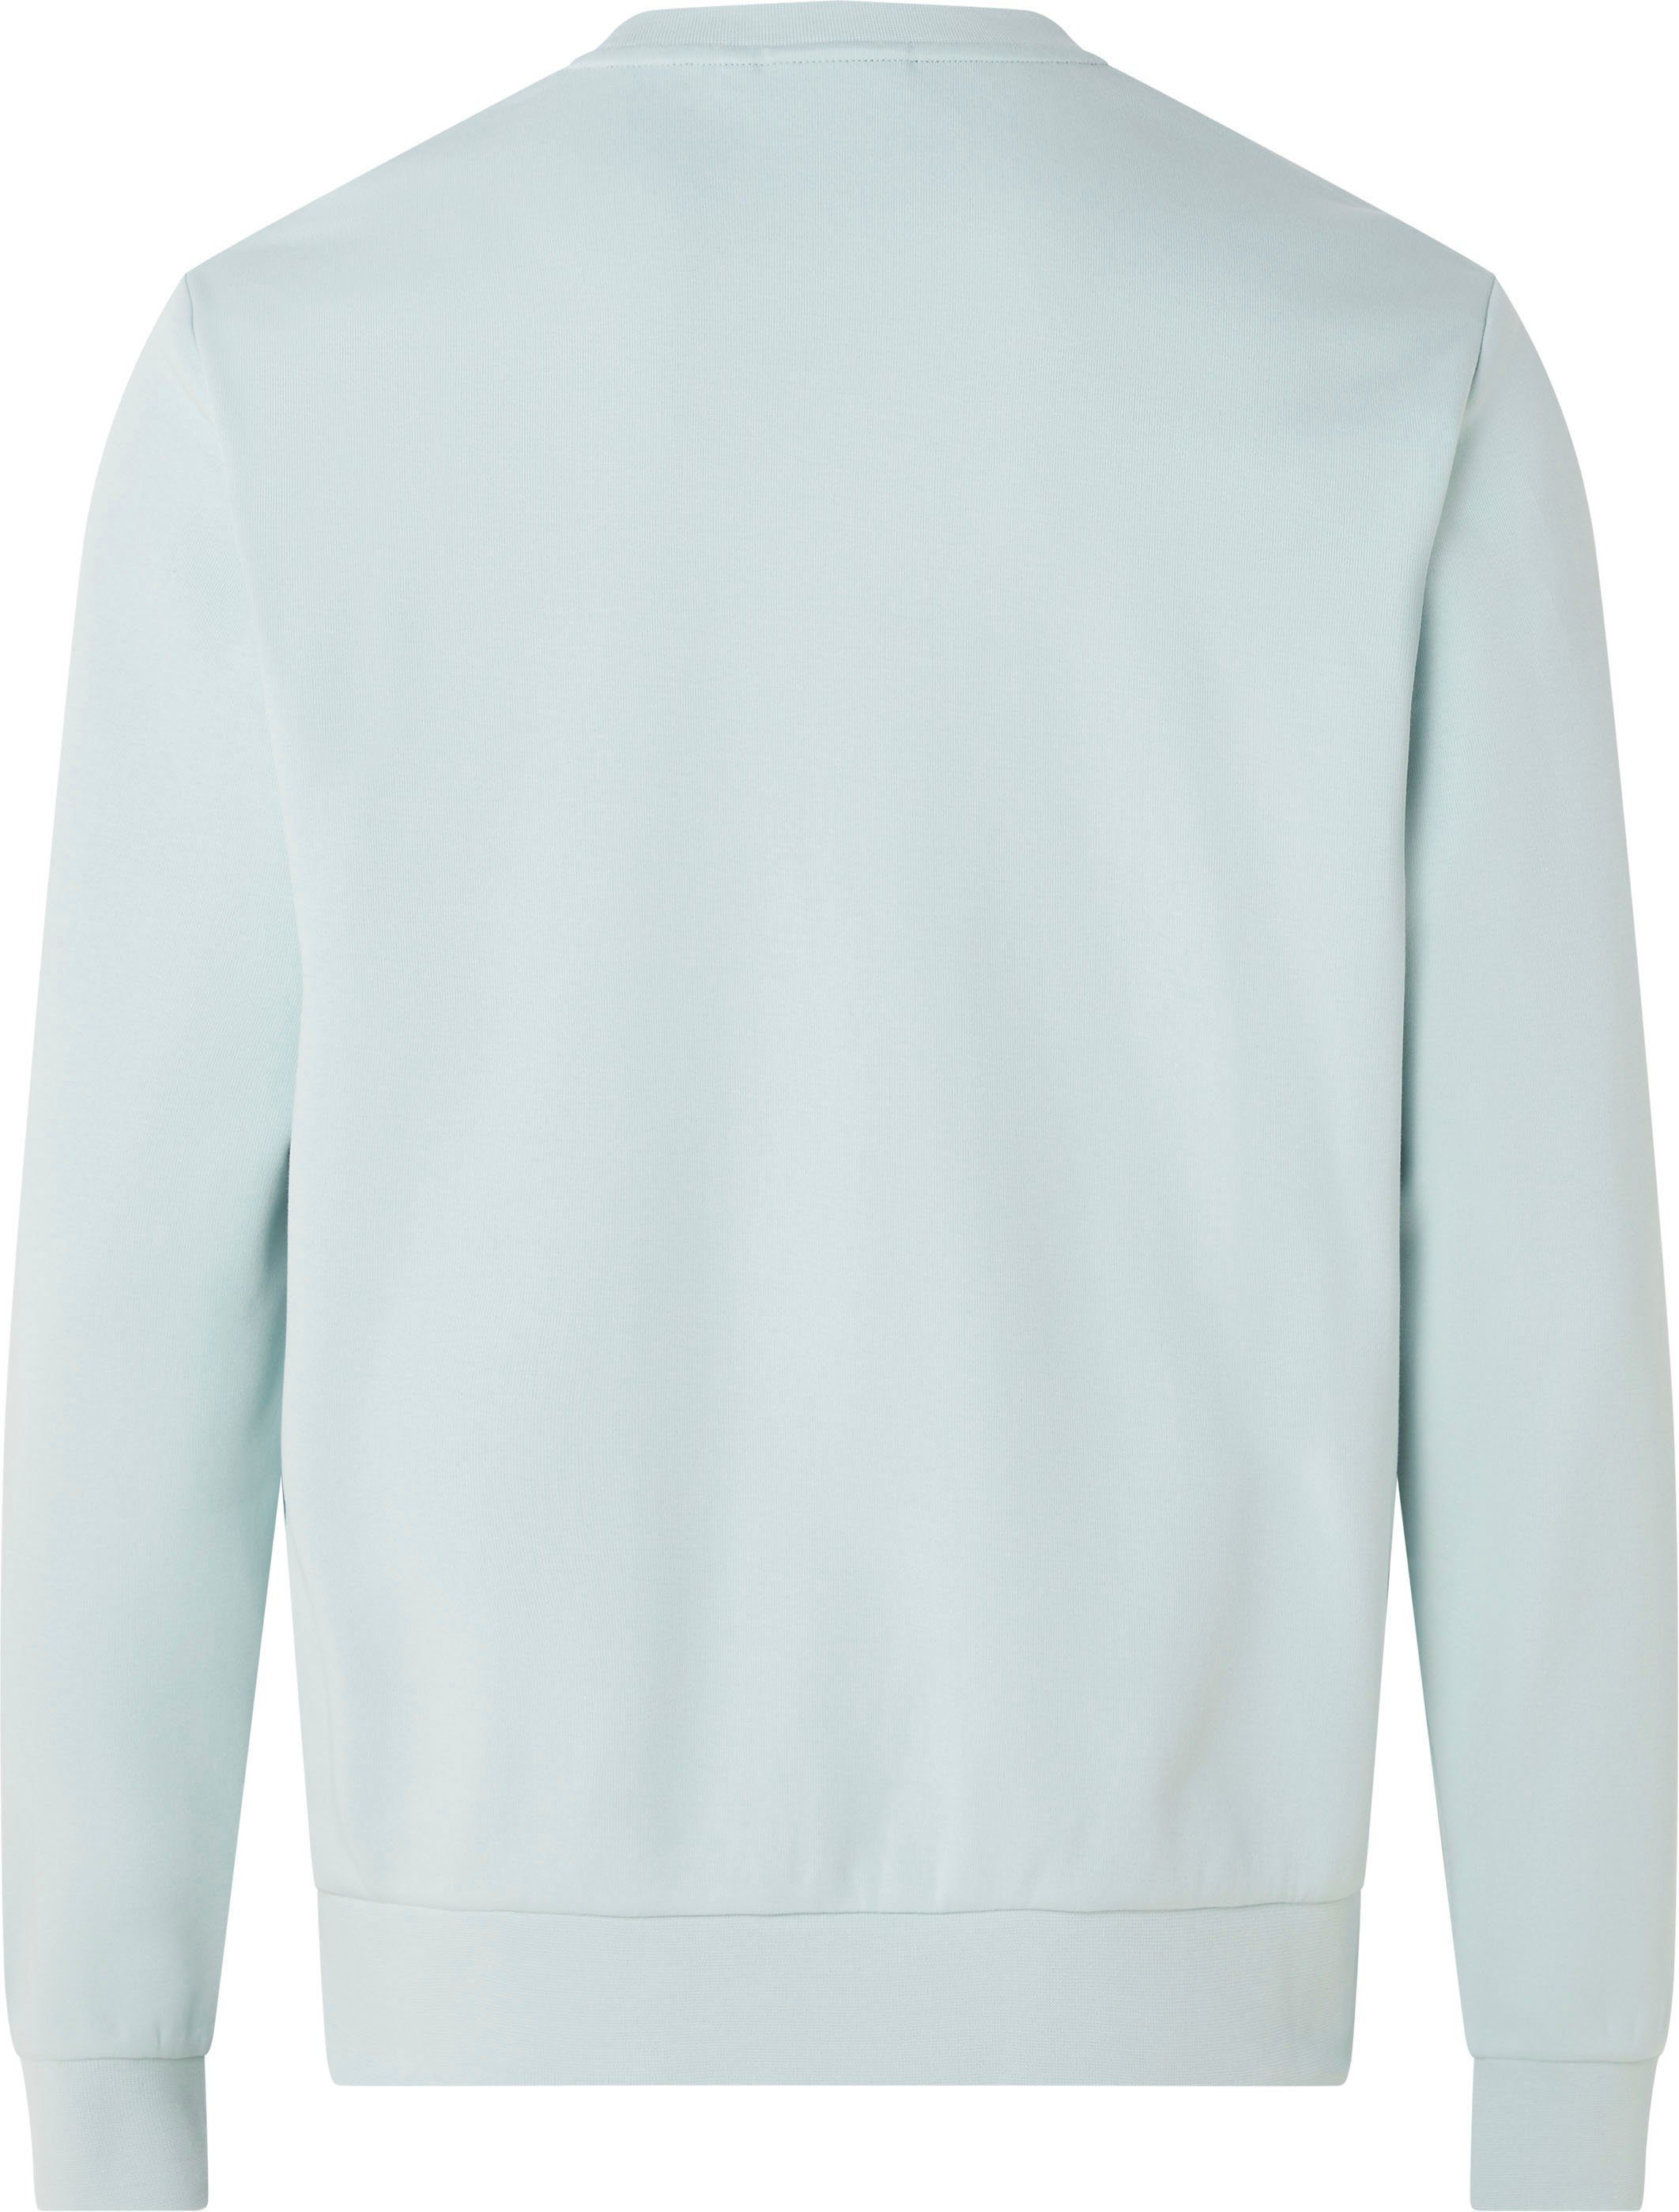 SWEATSHIRT mit Rundhalsausschnitt REPREVE Sweatshirt halsnahmen ghost Calvin Klein MICRO LOGO green